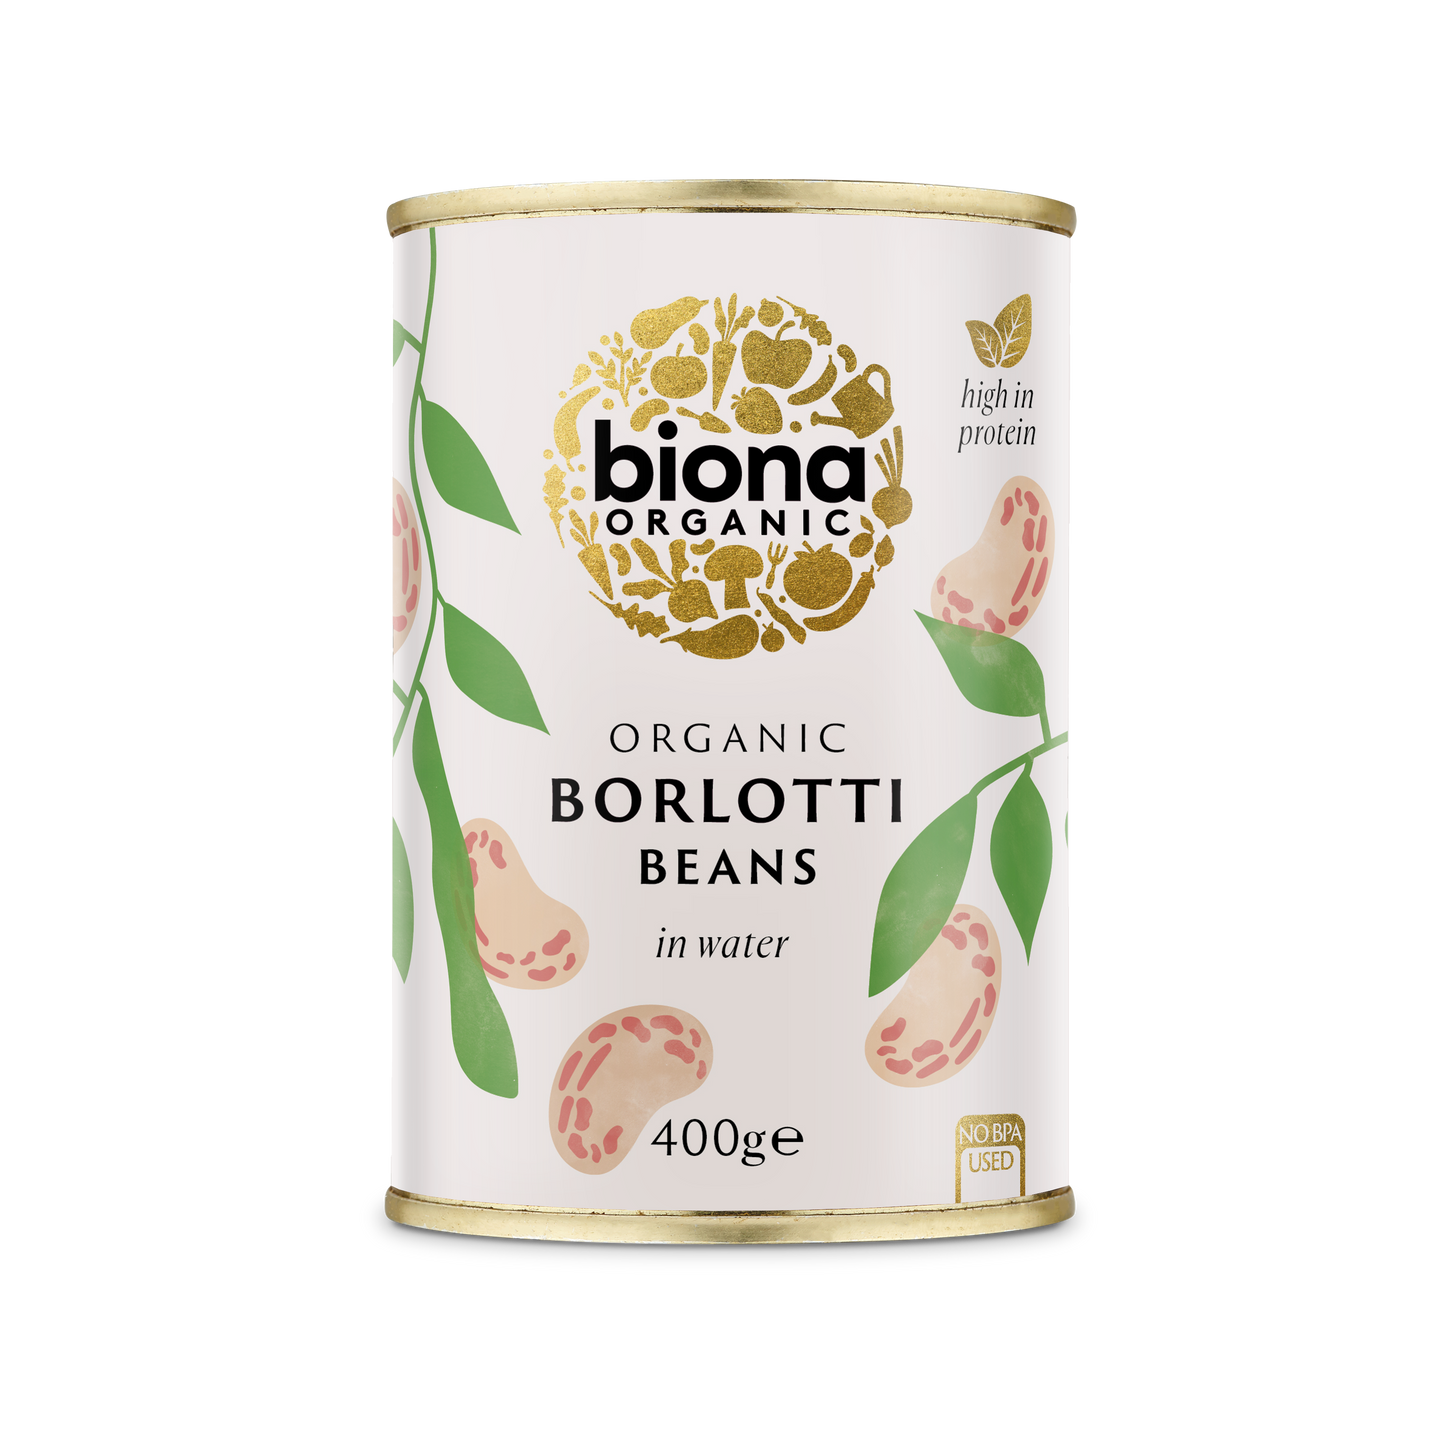 Biona Borlotti Beans - Case of 6 x 400G